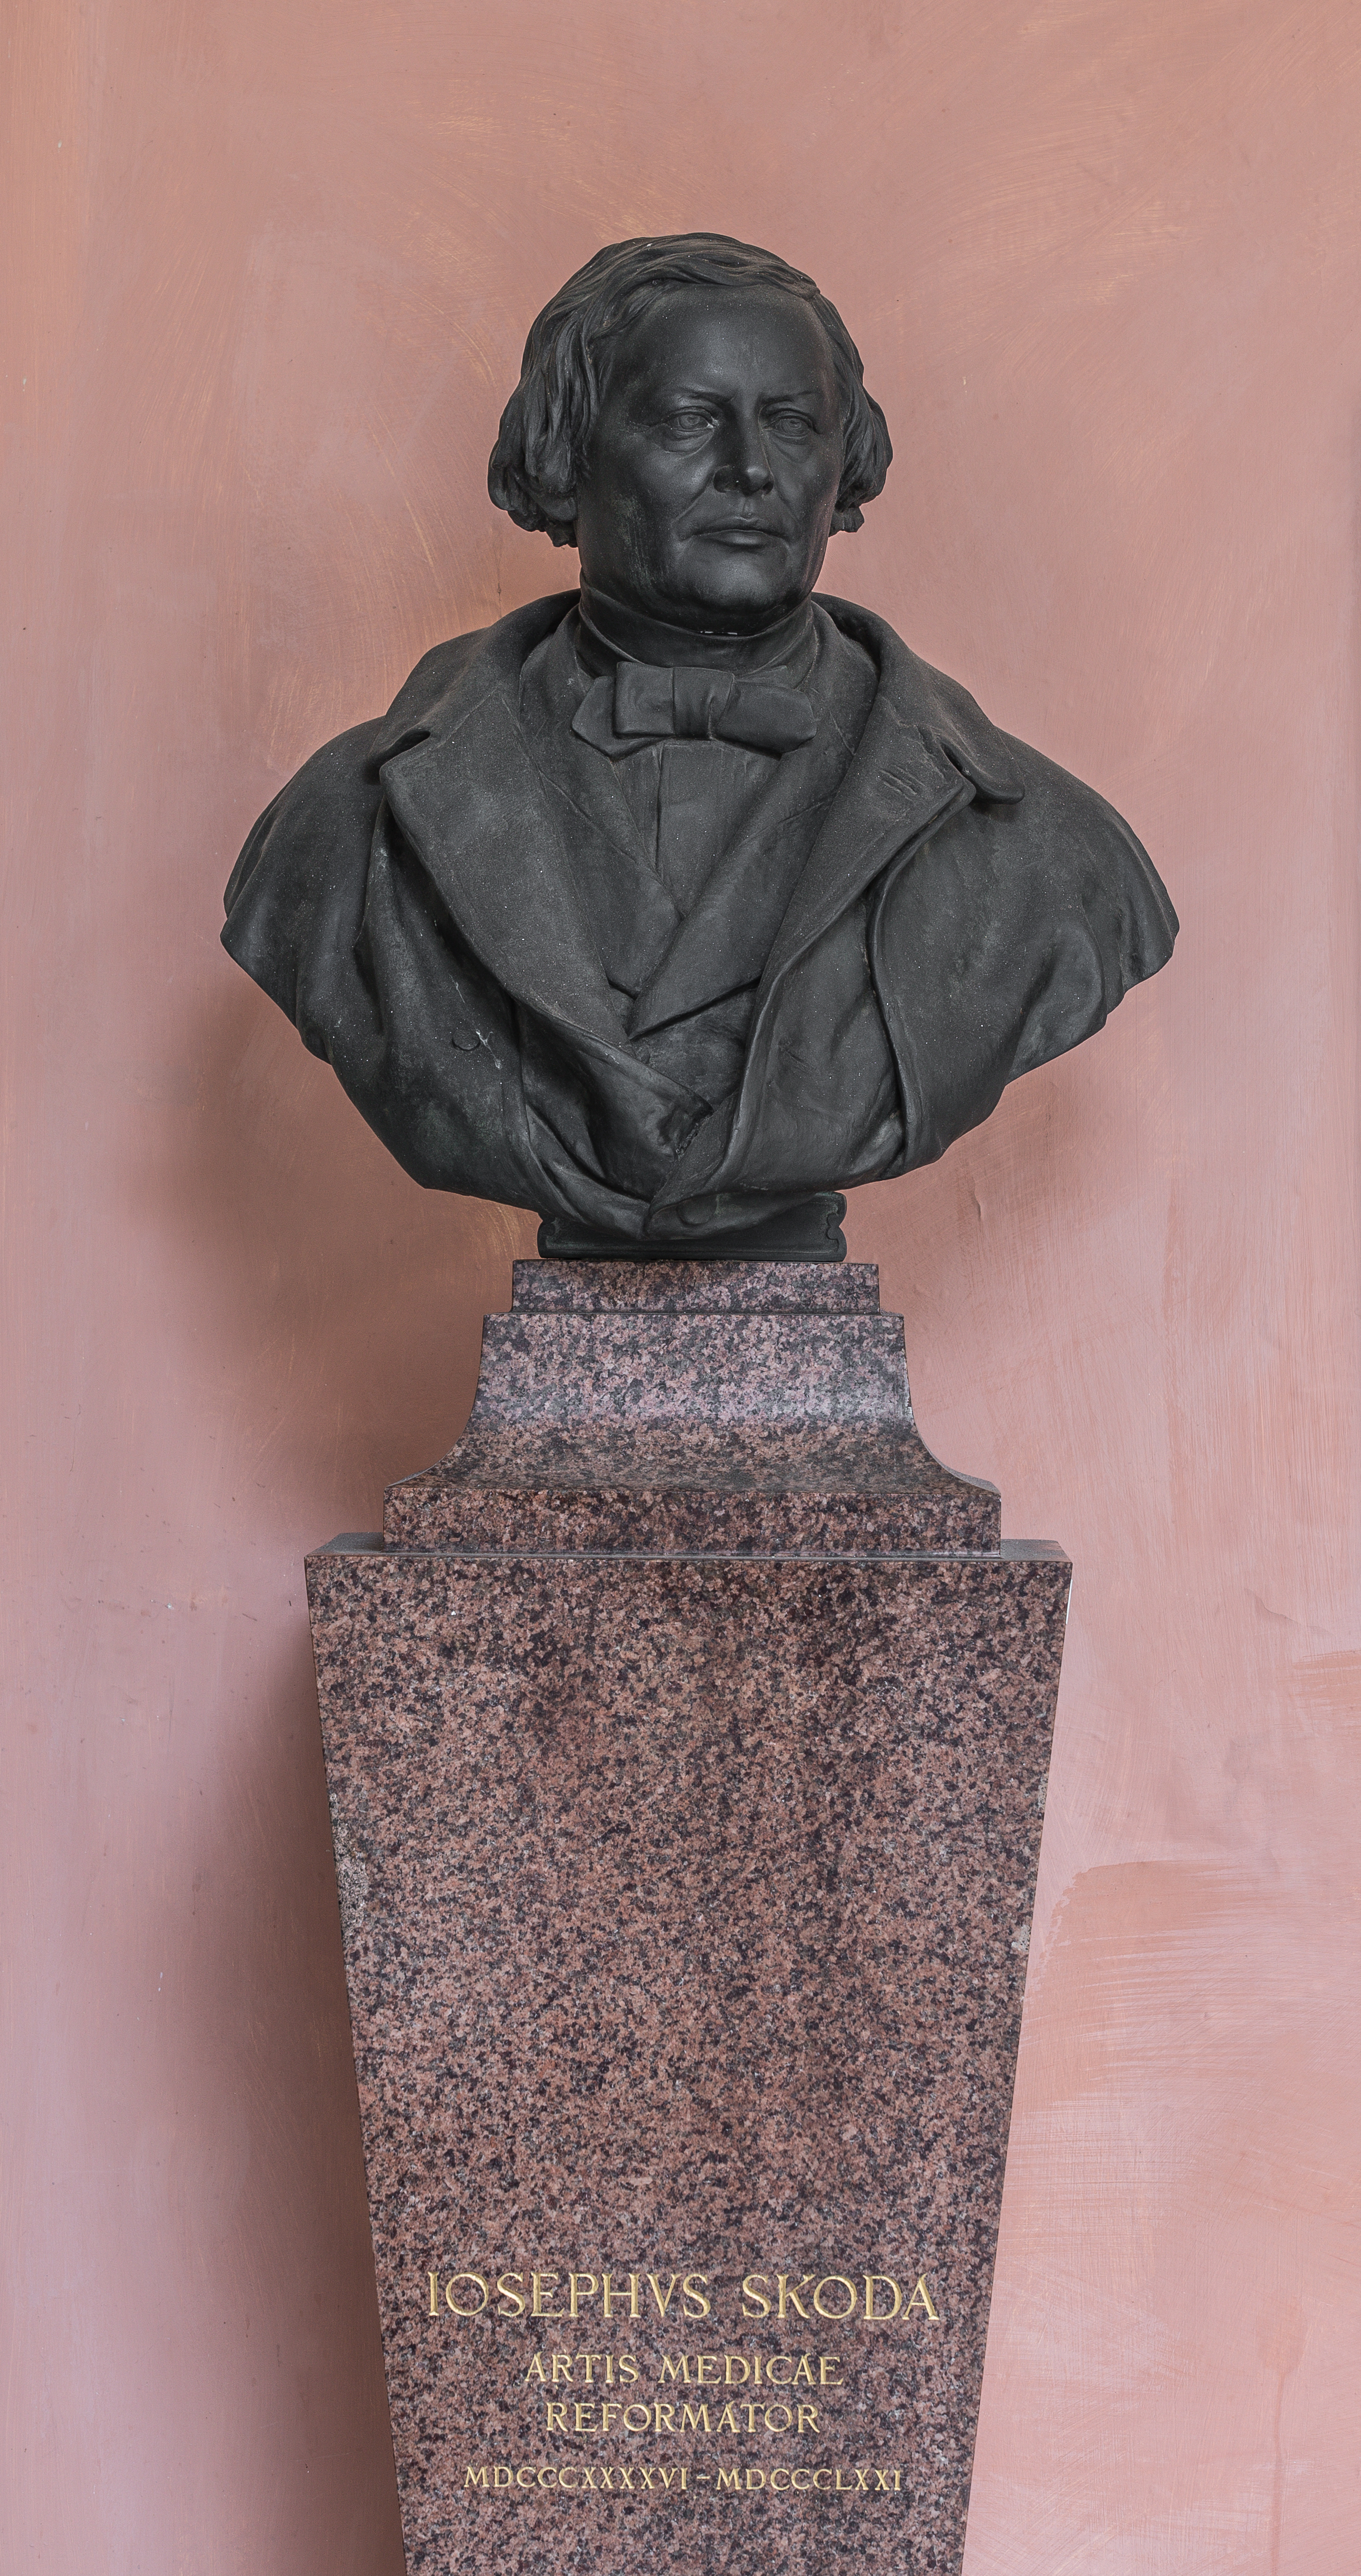 Josef von Skoda (1805-1881), Nr. 102 bust (bronze) in the Arkadenhof of the University of Vienna--34